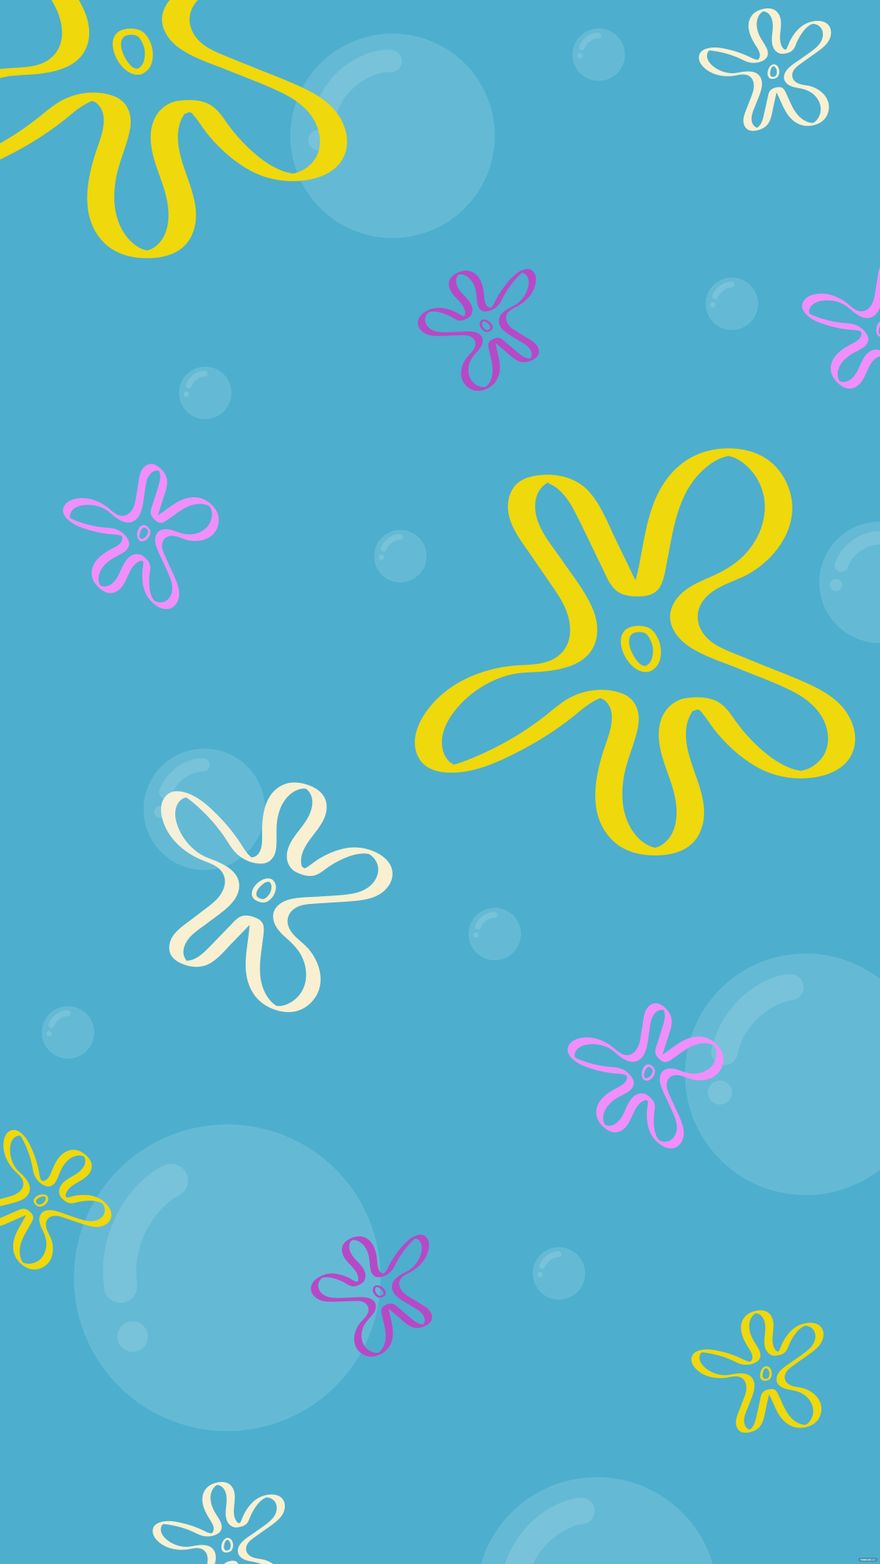 Spongebob Floral Background in Illustrator EPS JPG SVG Download